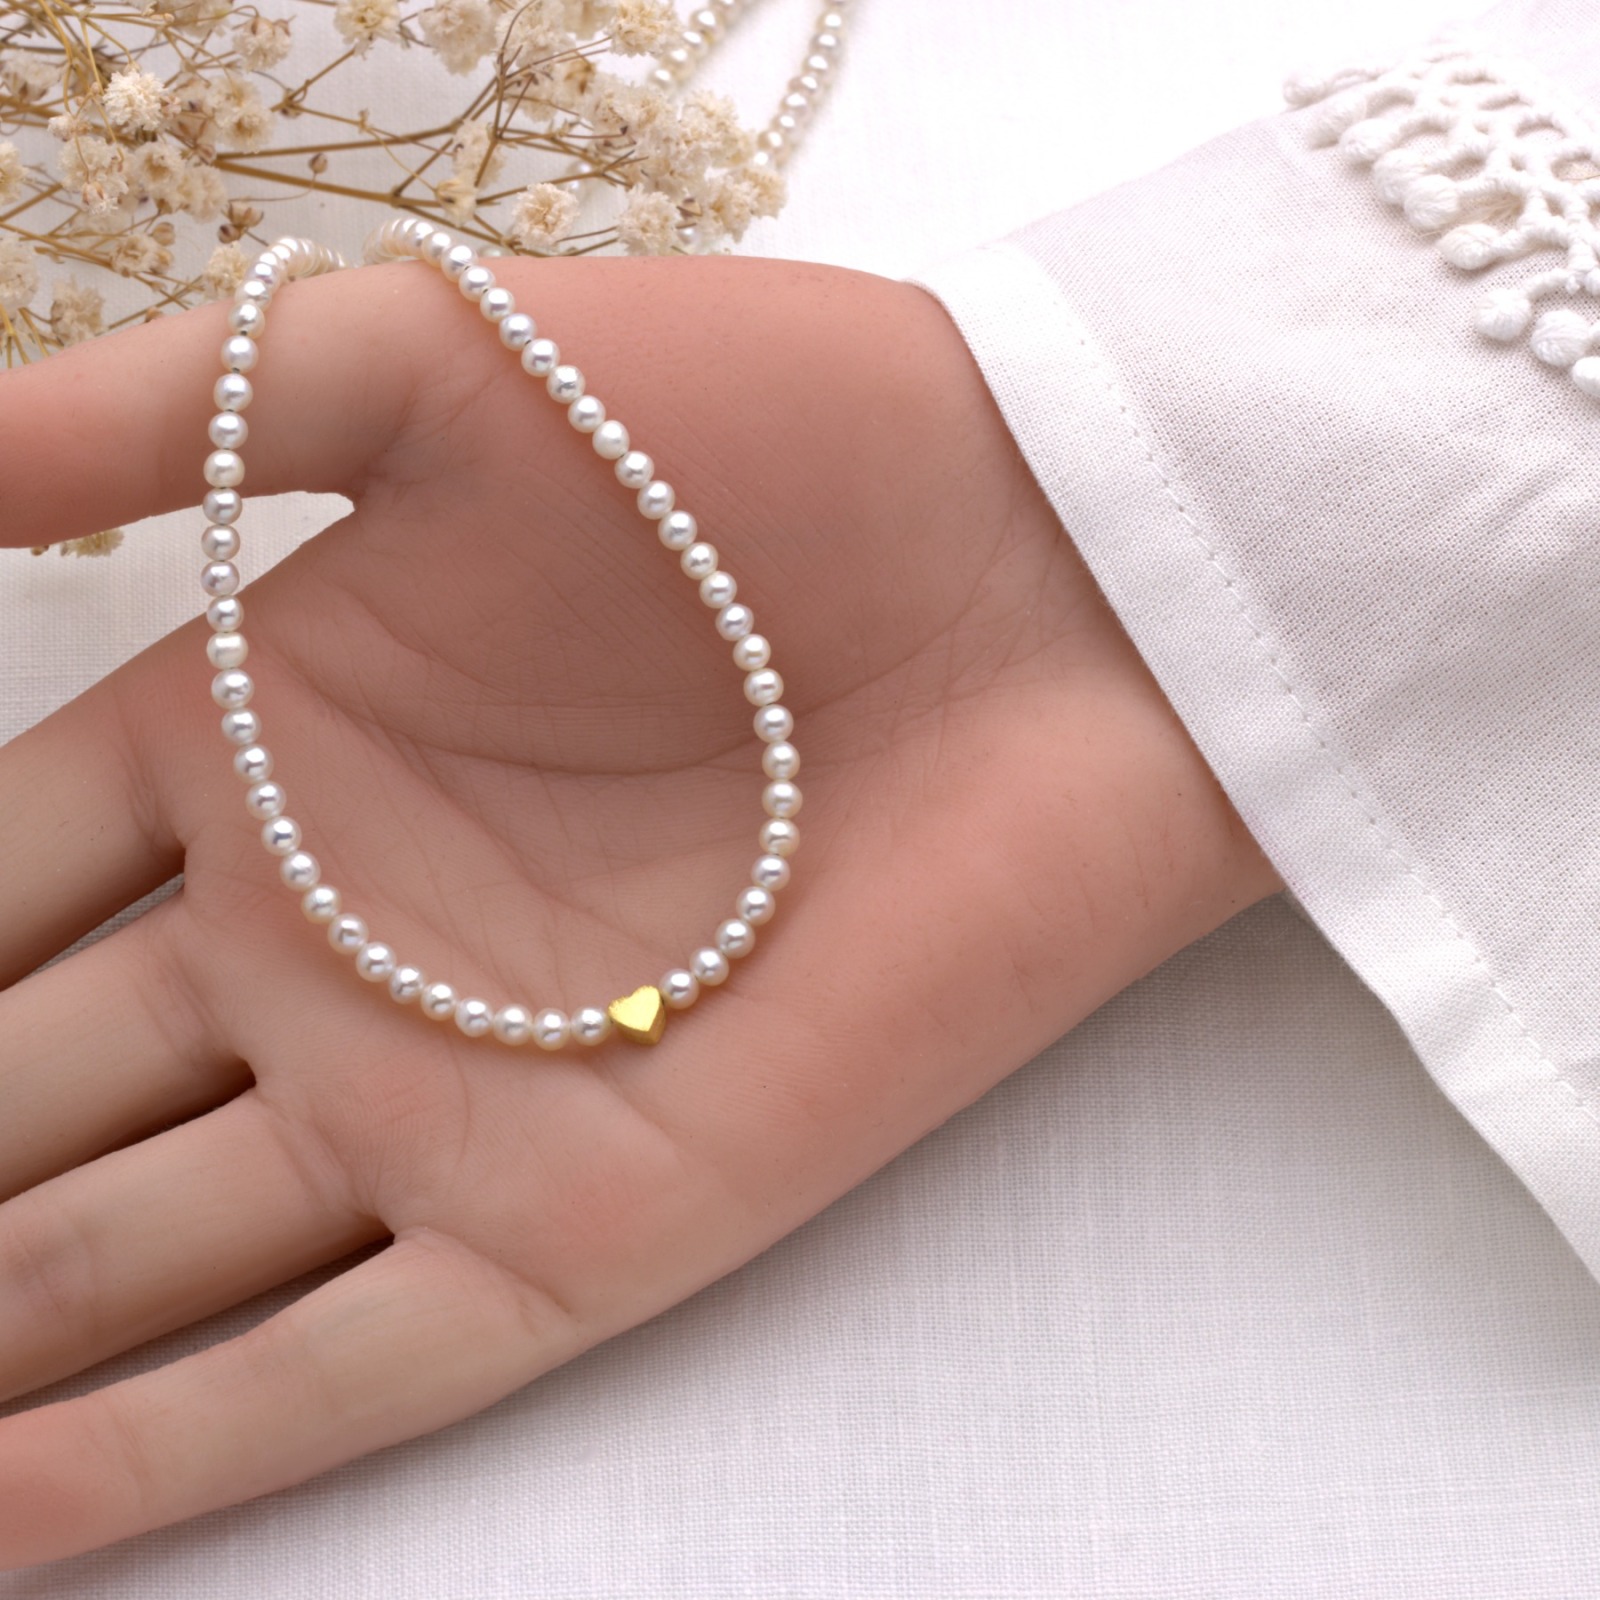 Zarte Perlenkette aus echten Süßwasser-Perlen mit kleinem Herz, Silber oder gold, schönes